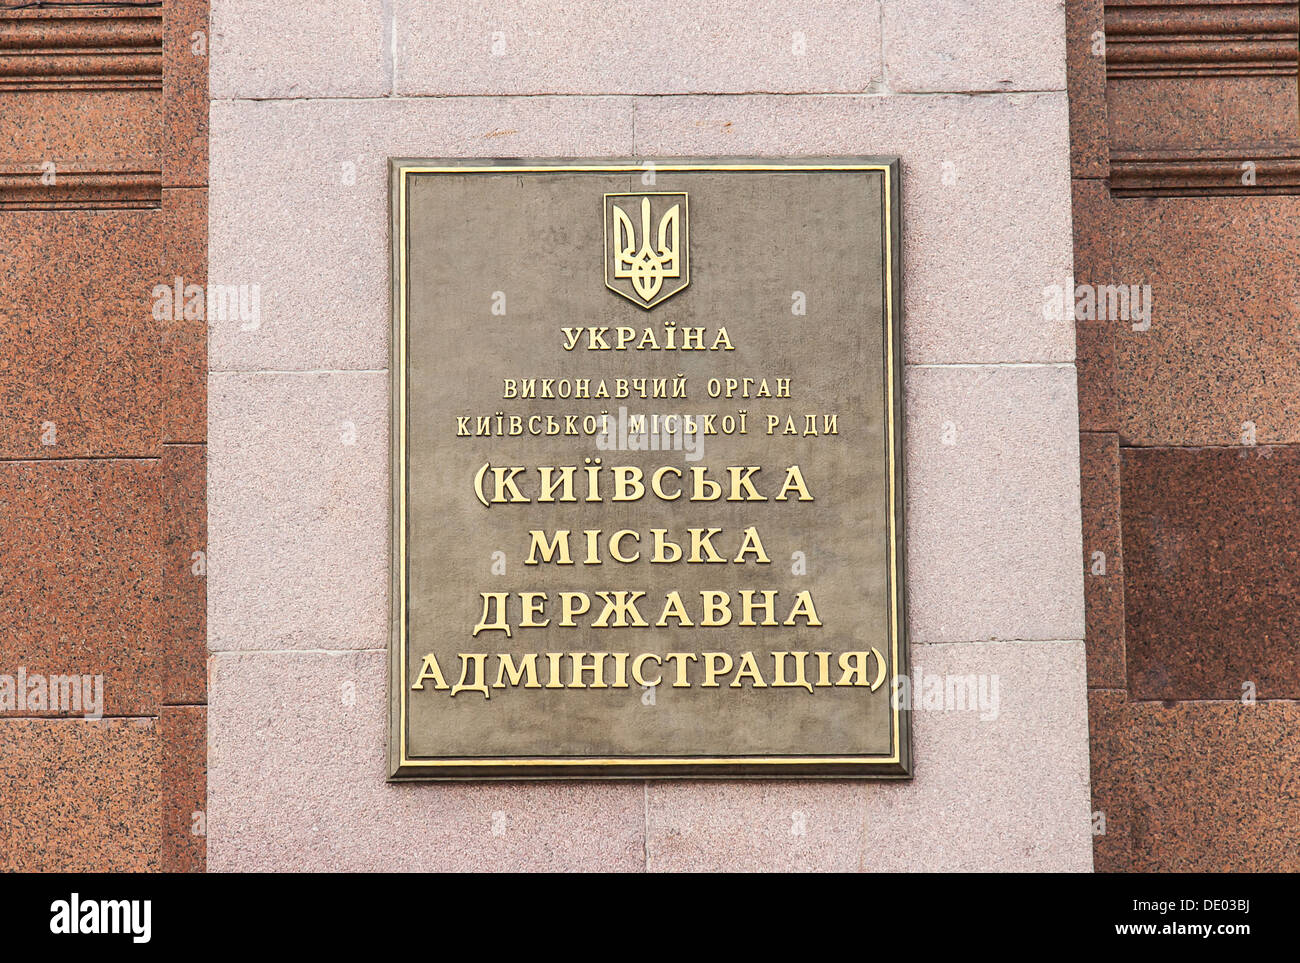 Building of the State Duma in Kiev Stock Photo